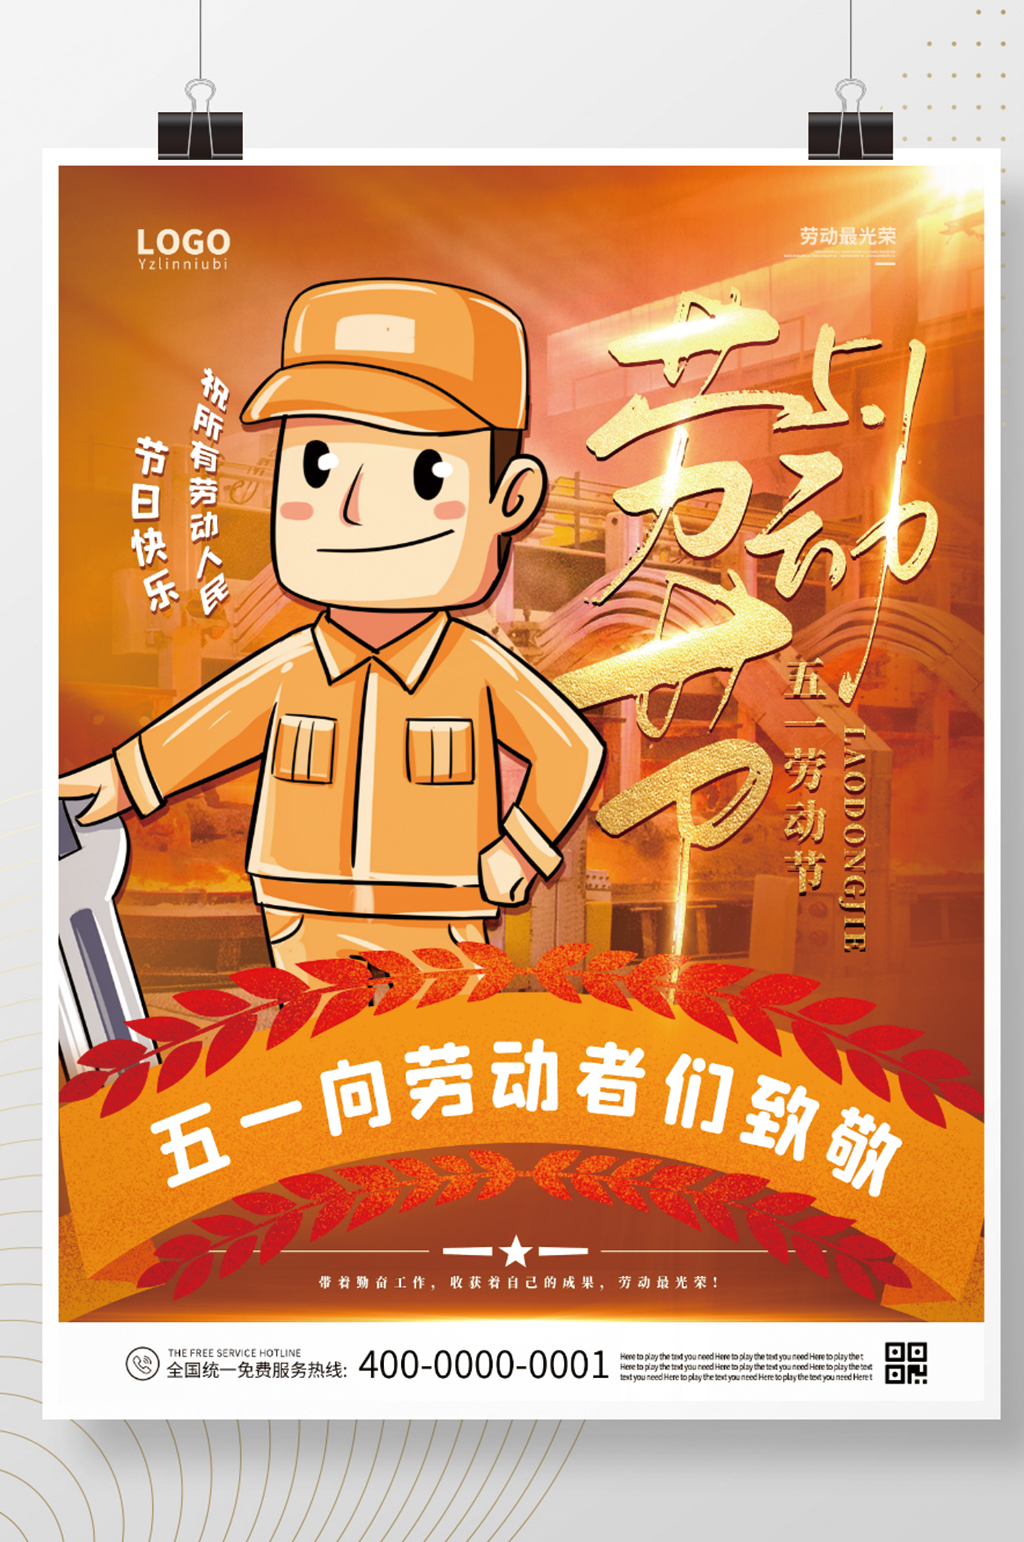 众图网独家提供51节日劳动节五一宣传海报素材免费下载,本作品是由z莹